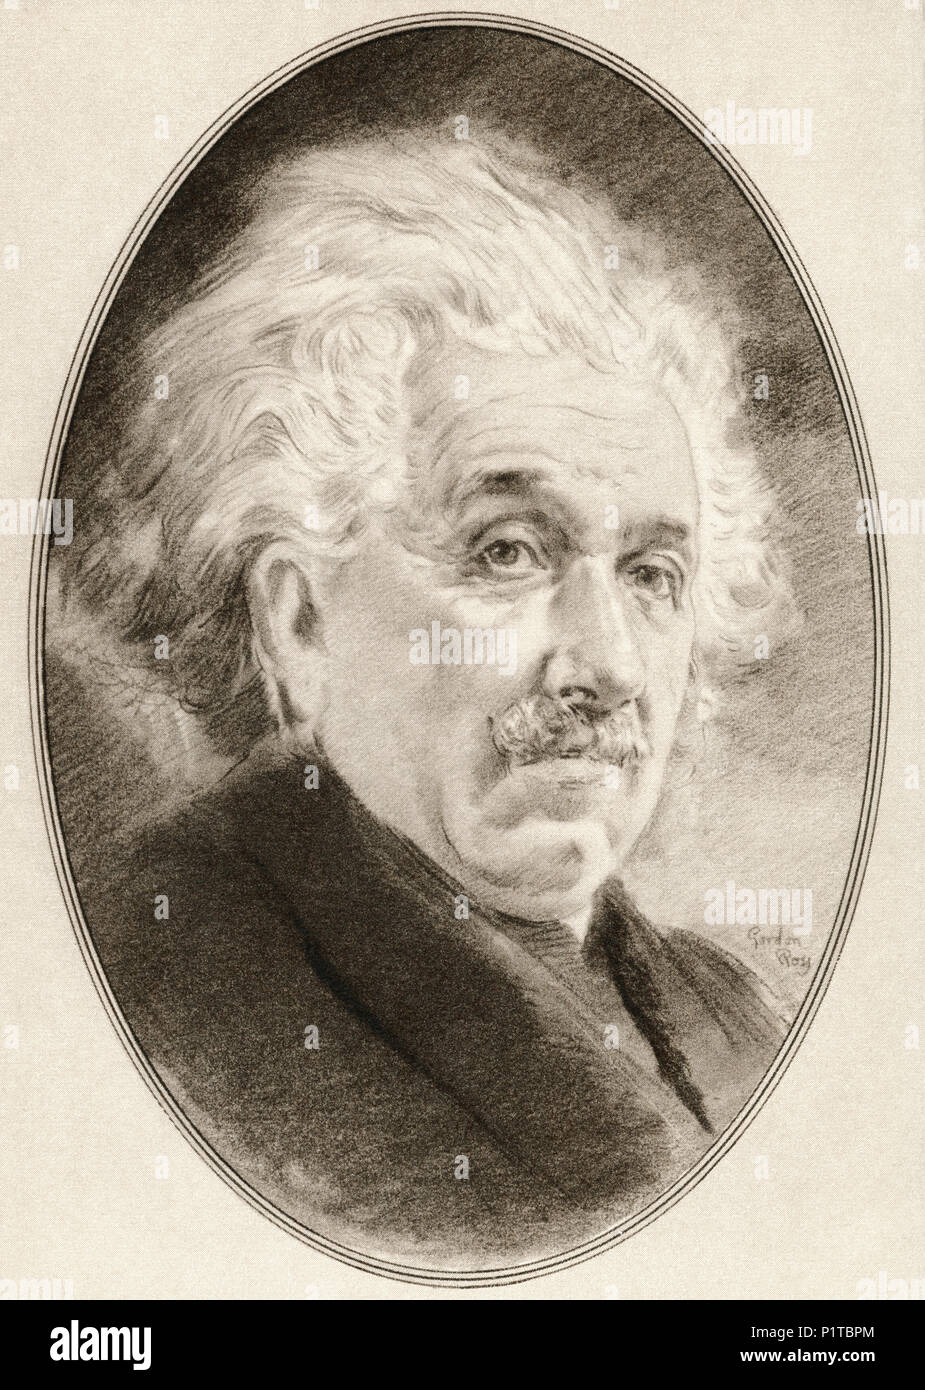 Albert Einstein, 1879 - 1955. El físico teórico nacido en Alemania, quien desarrolló la teoría de la relatividad. Ilustración por Gordon Ross, artista e ilustrador americano (1873-1946), vivir de las biografías de grandes científicos. Foto de stock